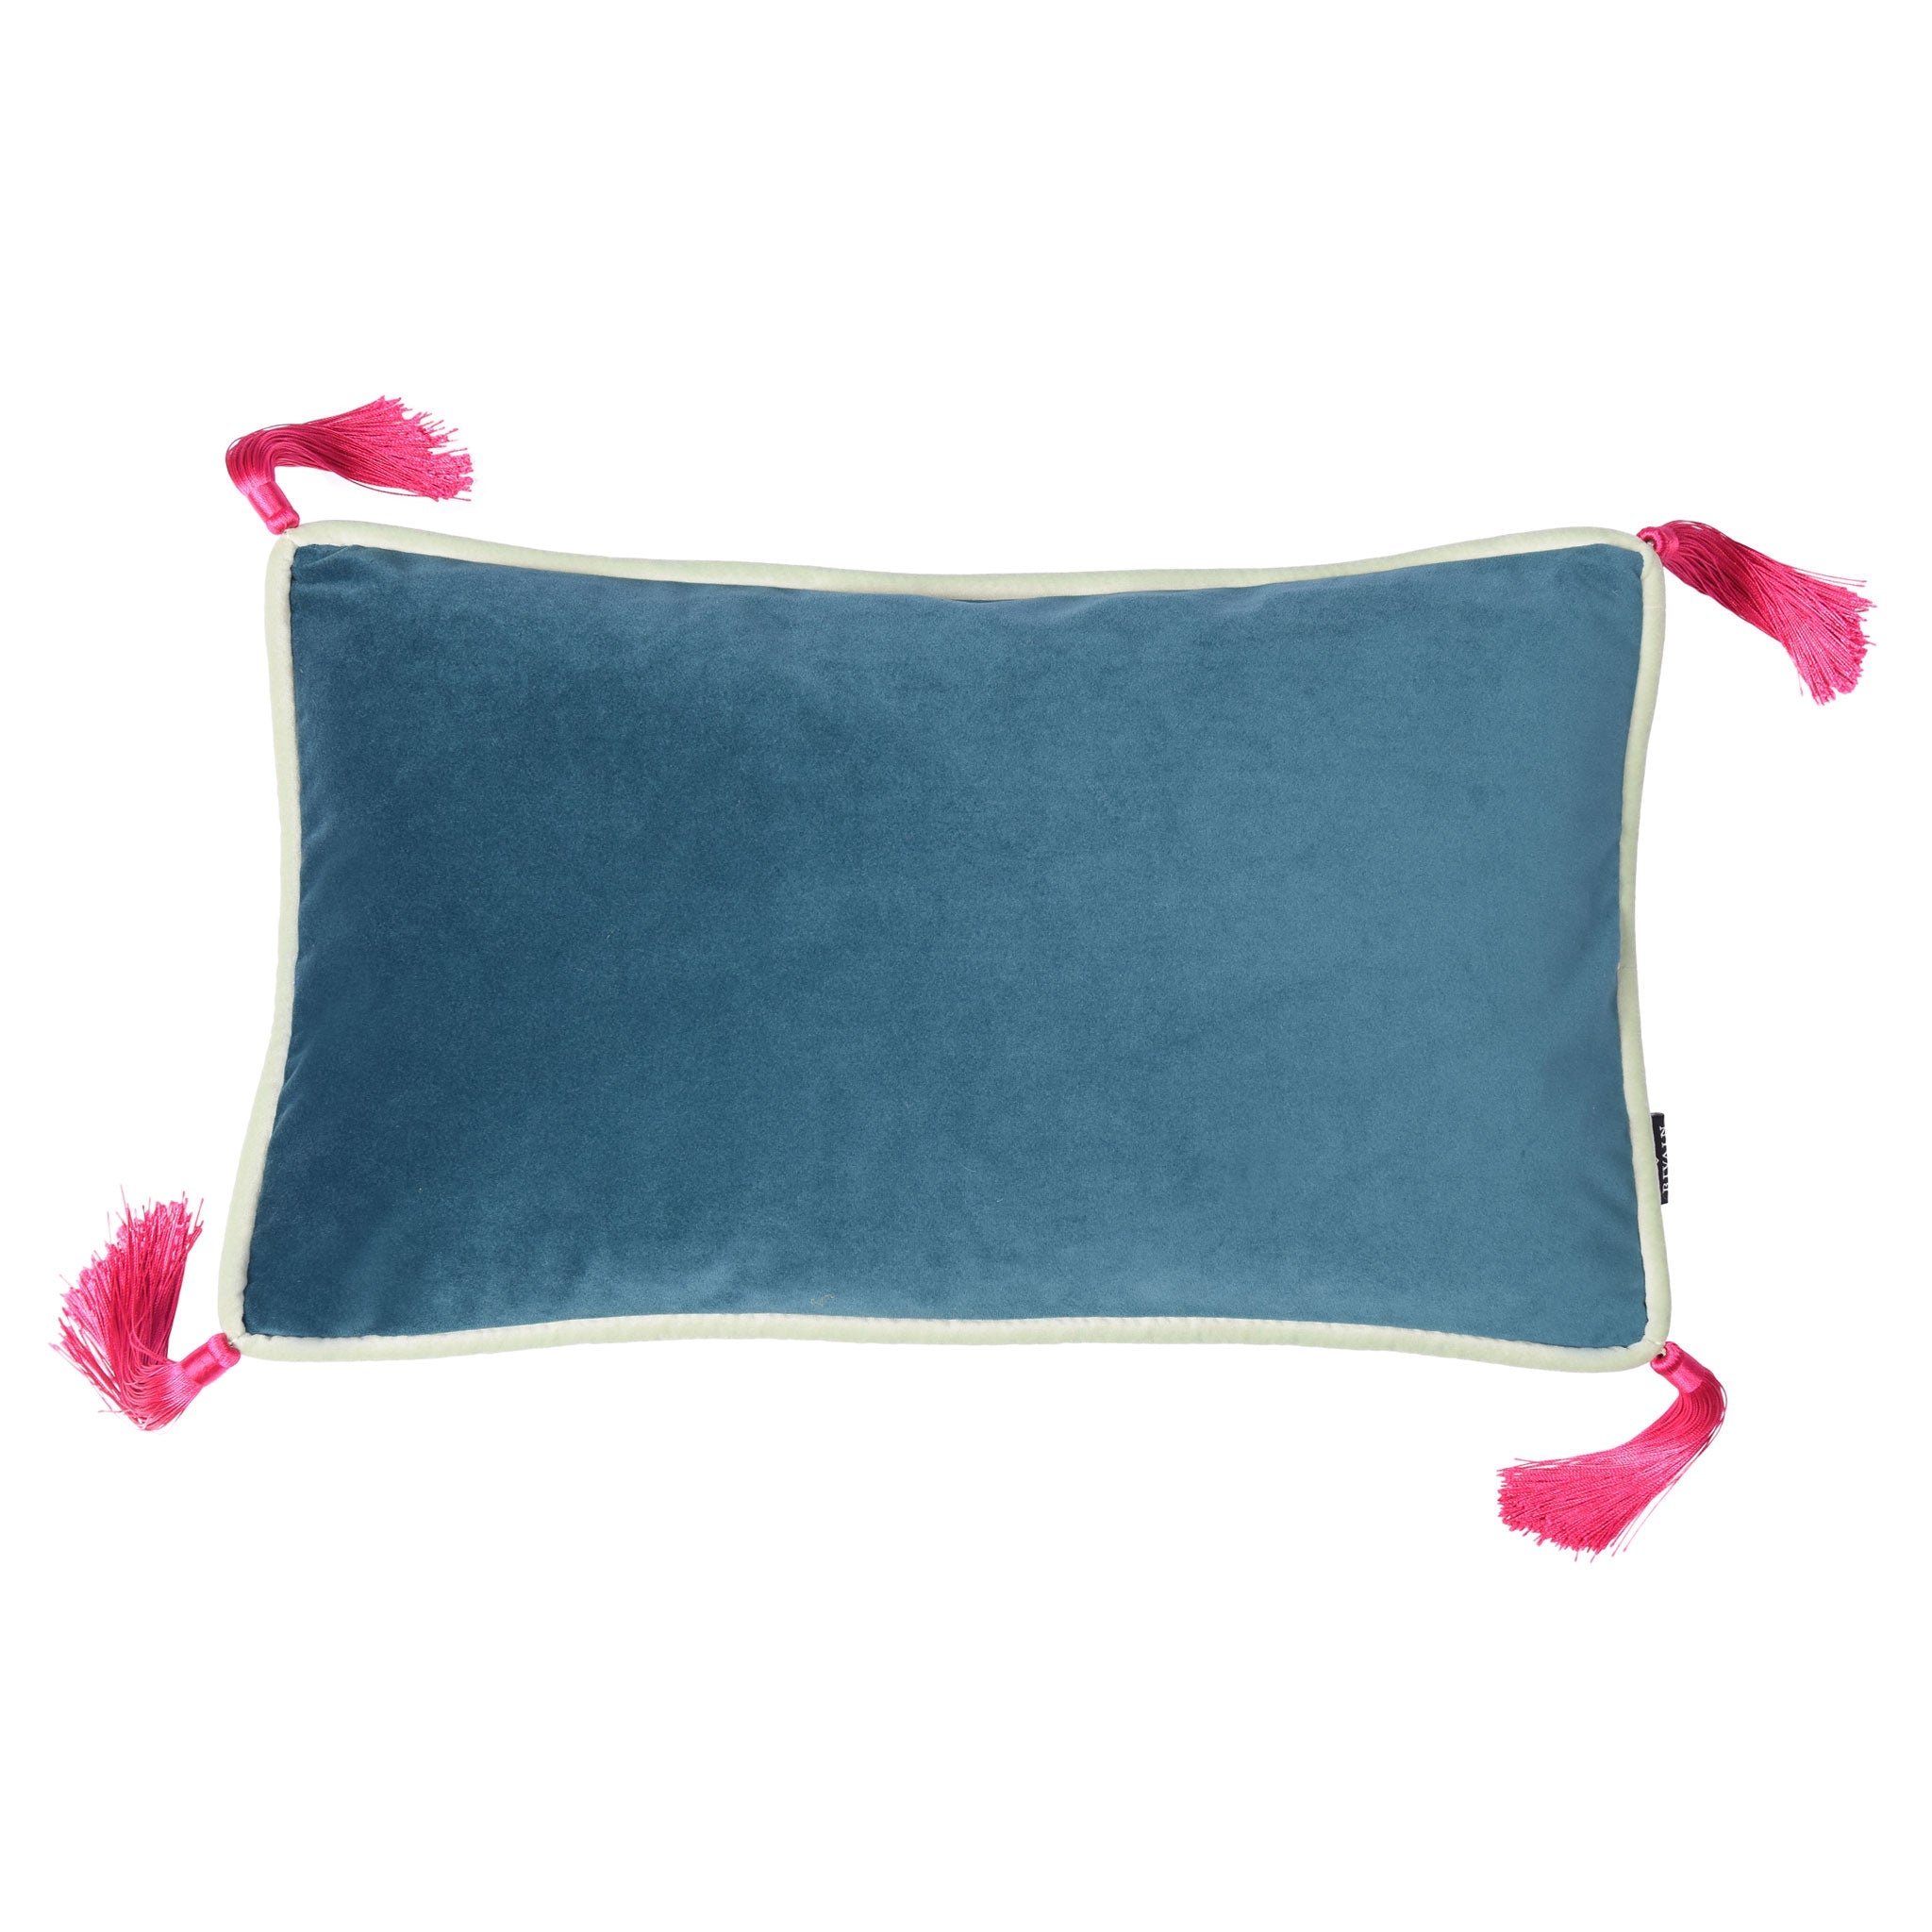 Teal Velvet Rectangular Cushion with Fuschia Tassels